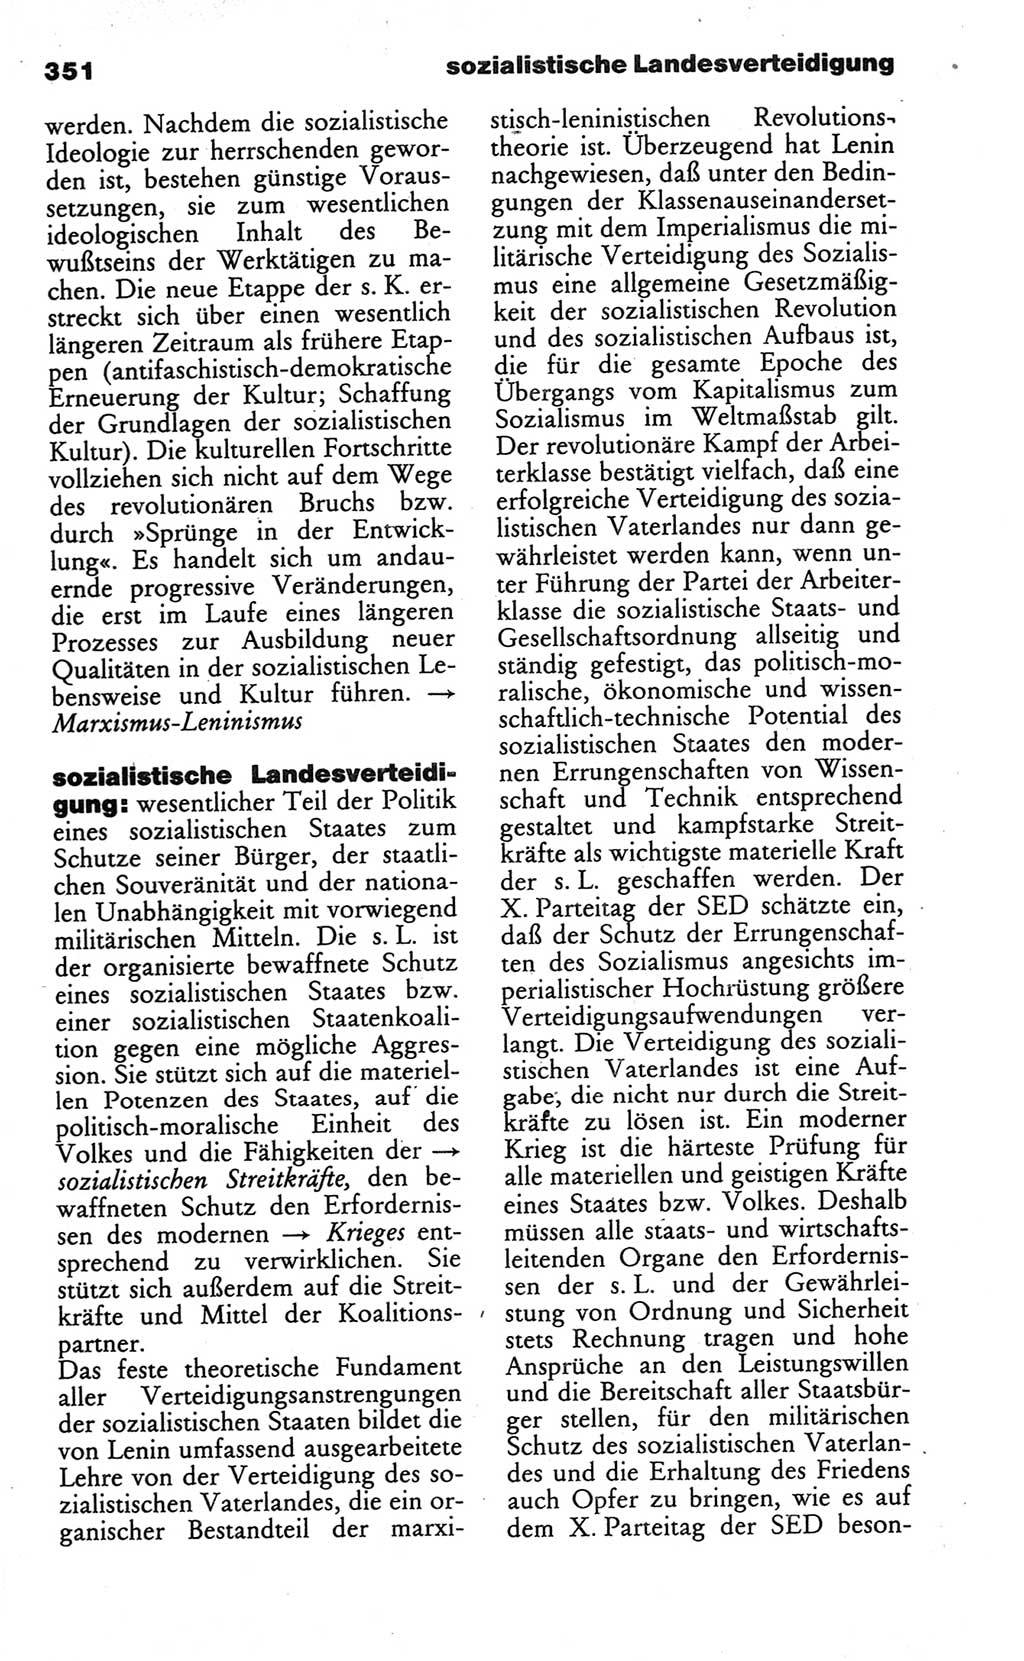 Wörterbuch des wissenschaftlichen Kommunismus [Deutsche Demokratische Republik (DDR)] 1984, Seite 351 (Wb. wiss. Komm. DDR 1984, S. 351)